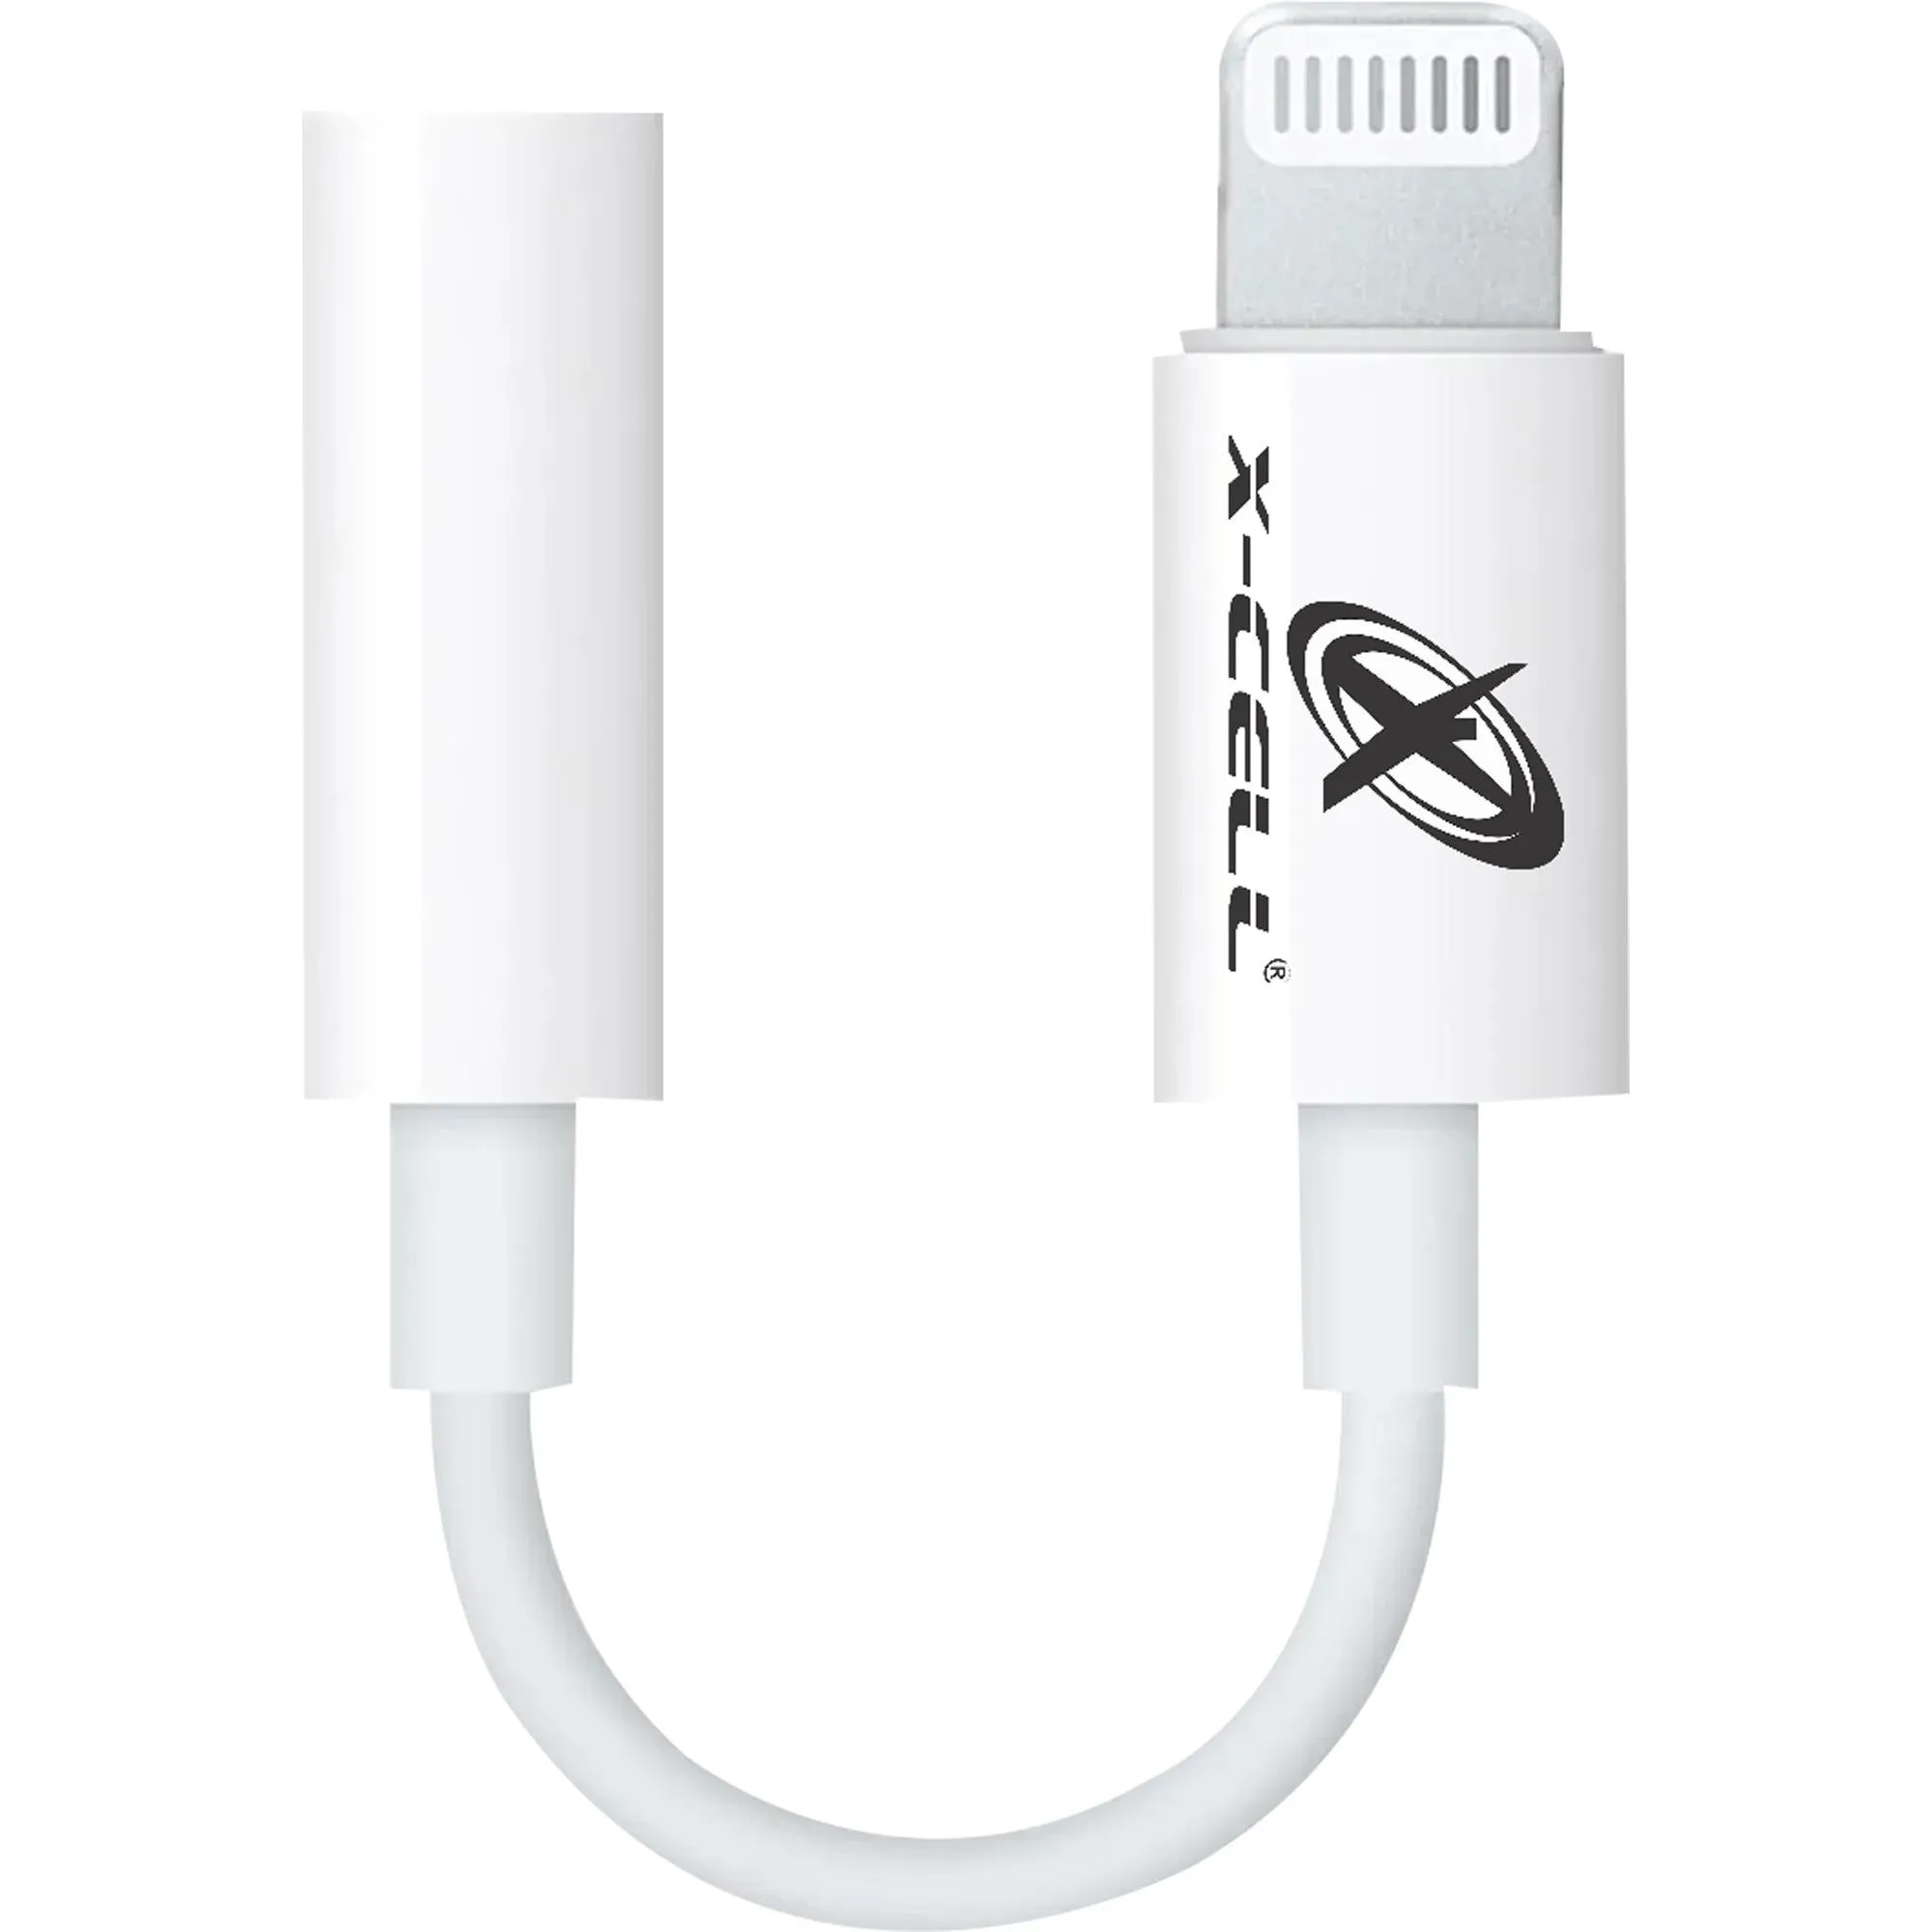 Cabo Adaptador P2 USB Light 8P Flex Branco por 14,99 à vista no boleto/pix ou parcele em até 1x sem juros. Compre na loja Mundomax!